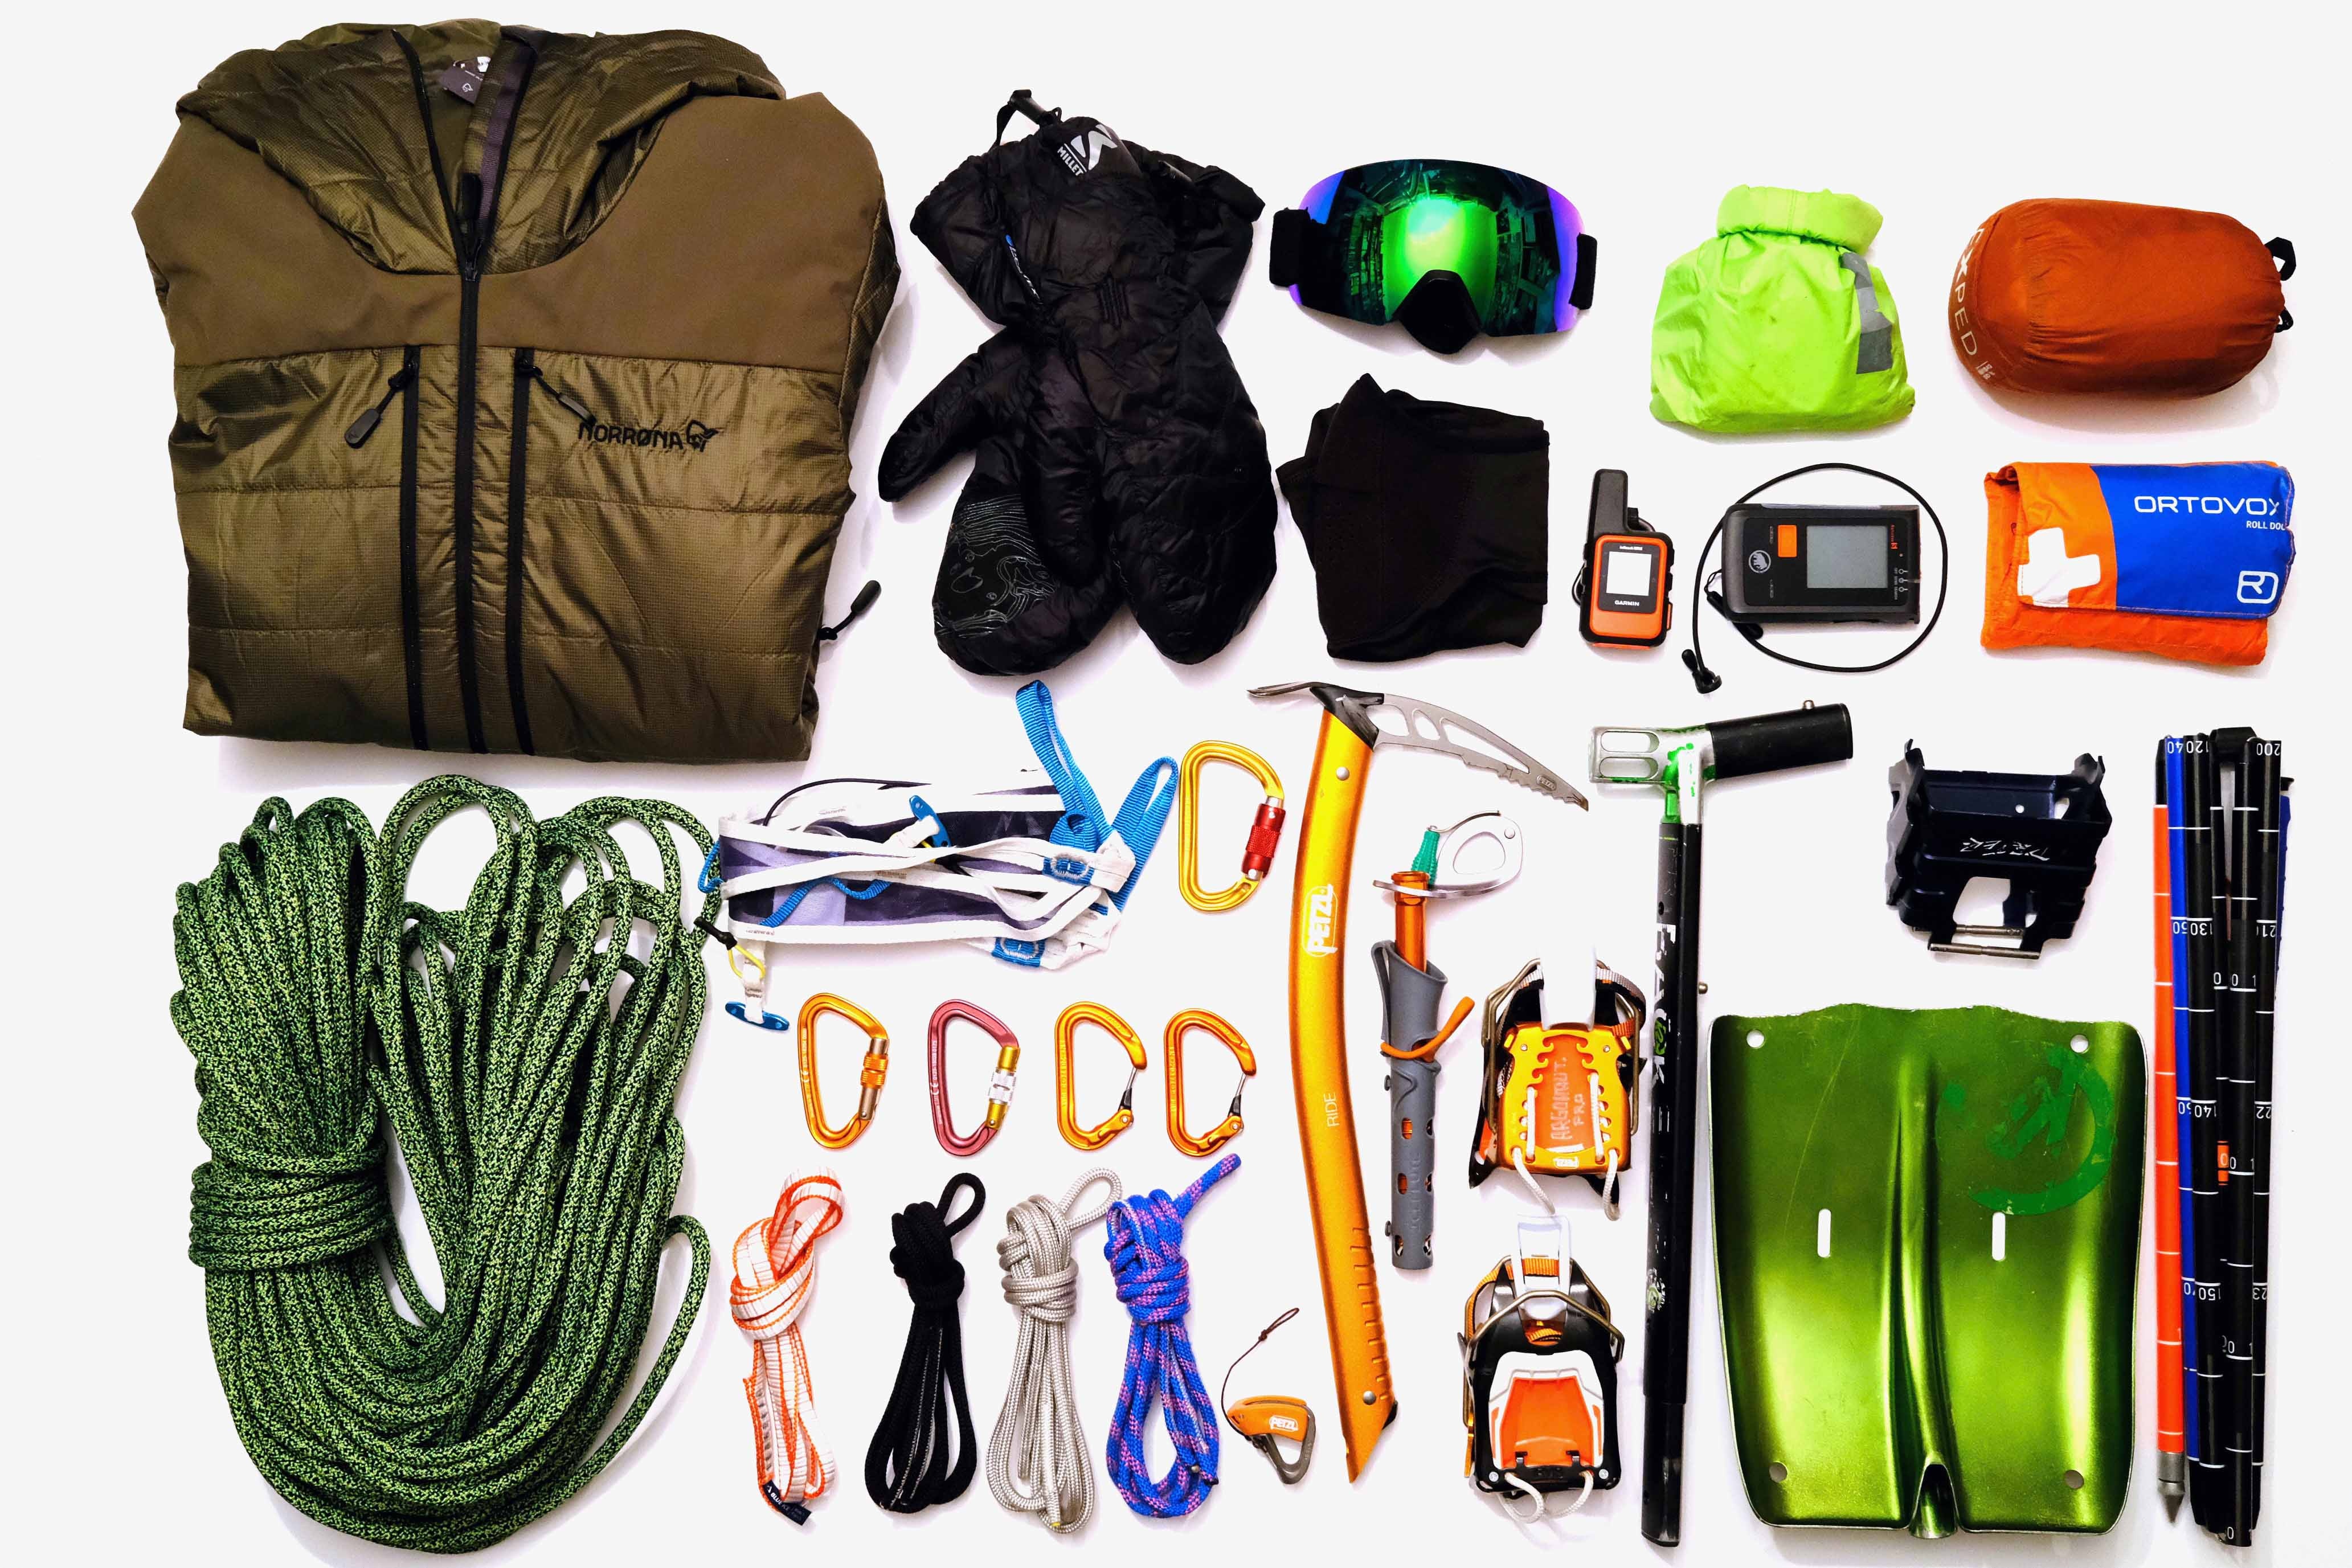 Packliste: Ausrüstung für einen Tag am Gletscher. Das LVS-Gerät befindet sich klarerweise am Körper.